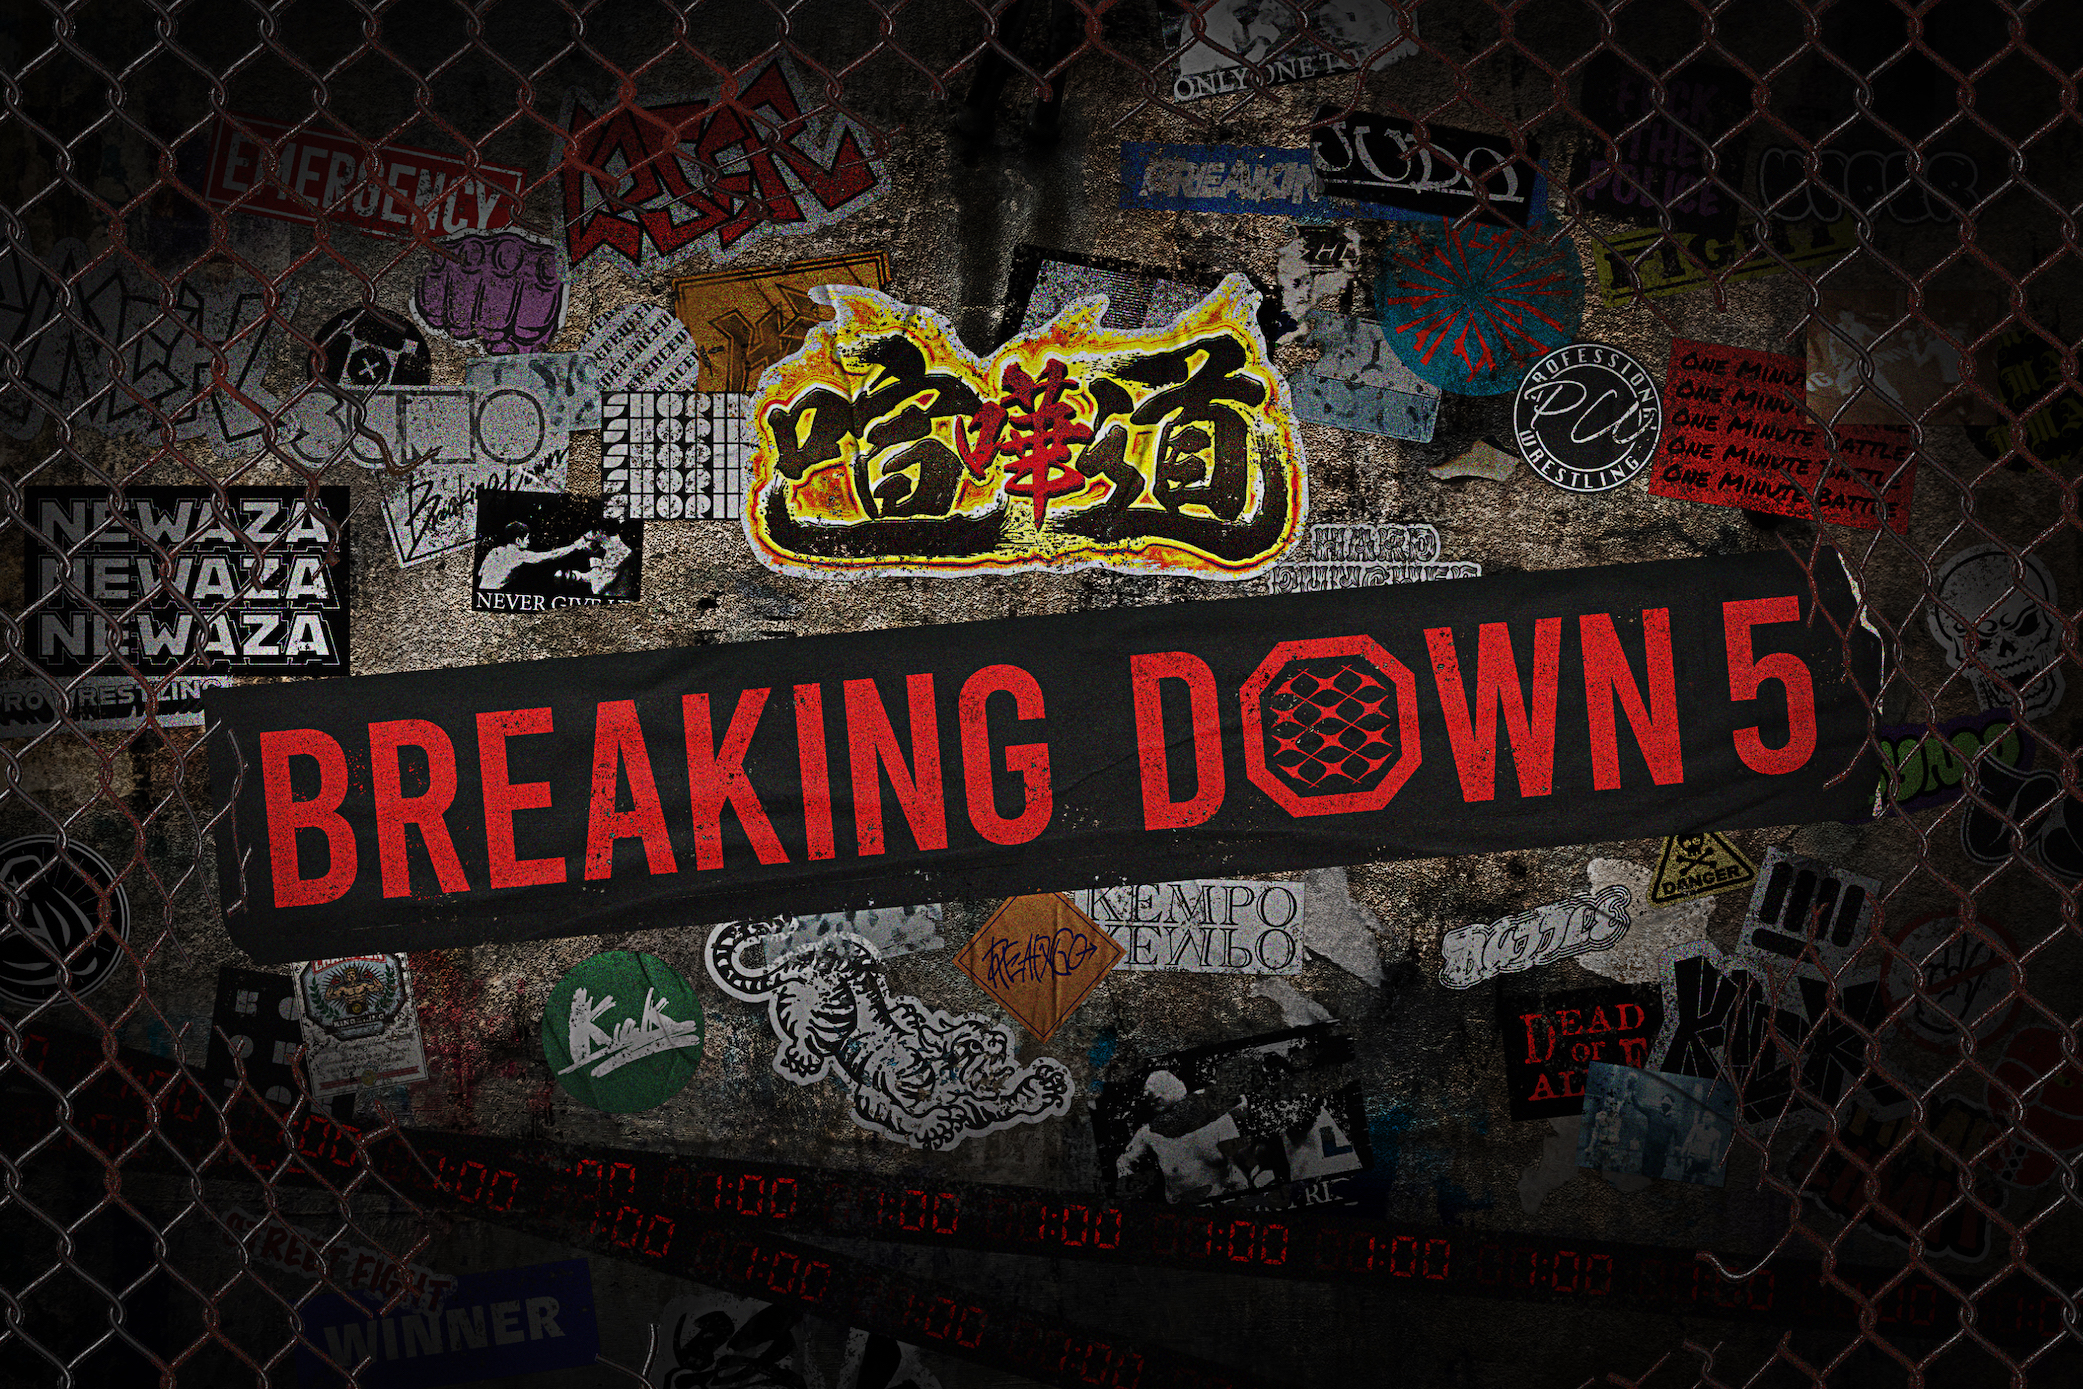 1分間 最強を決める総合格闘技 Breaking Down を高画質 高音質で オリジナルライブ配信プラットフォーム Breaking Down Live 誕生 Breakingdown株式会社のプレスリリース